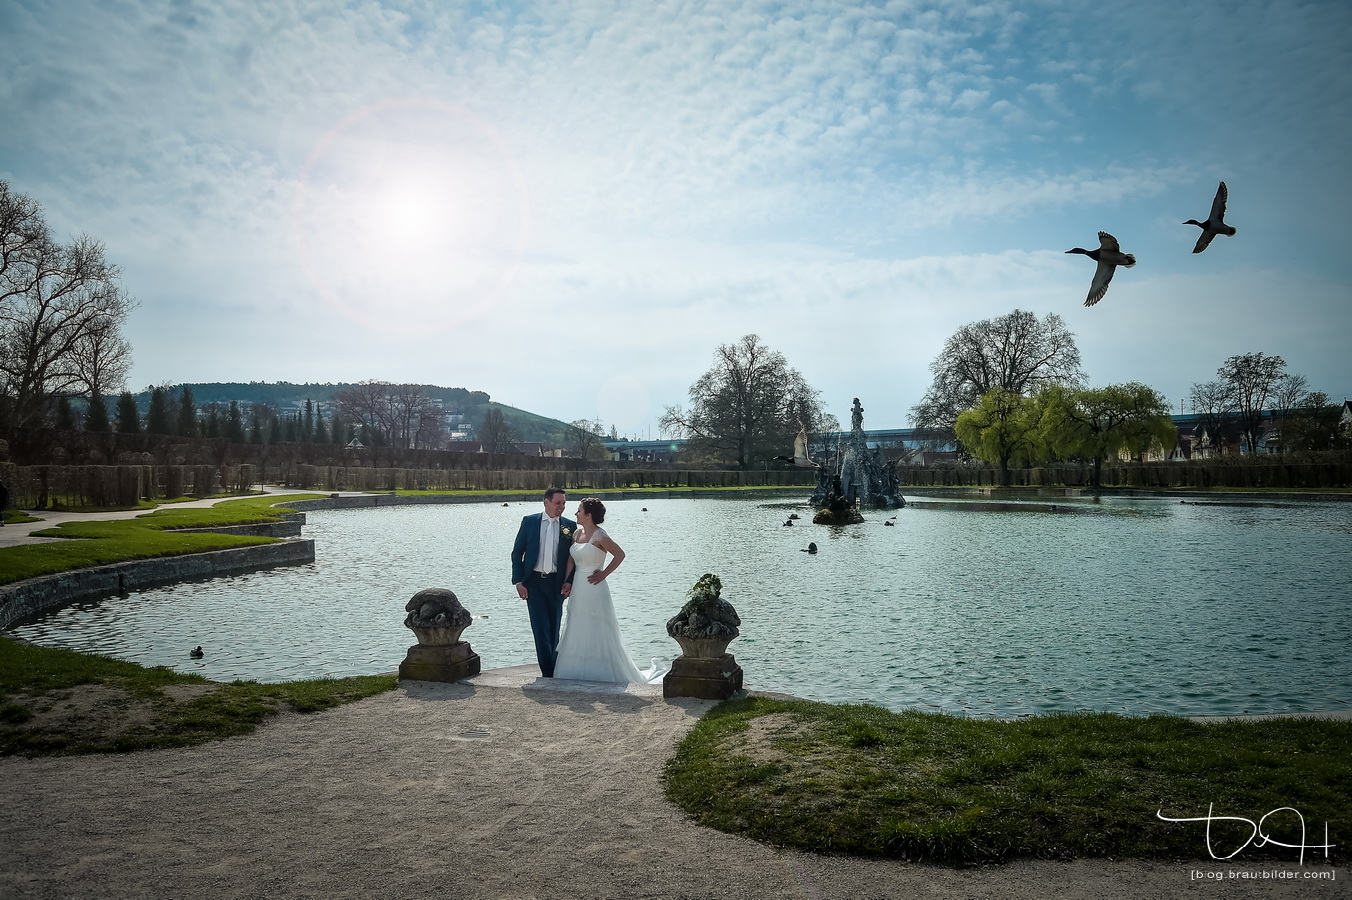 Traumhafte Hochzeitsbilder in traumhafter Umgebung! Euer Hochzeitsfotograf im Rokokogarten.